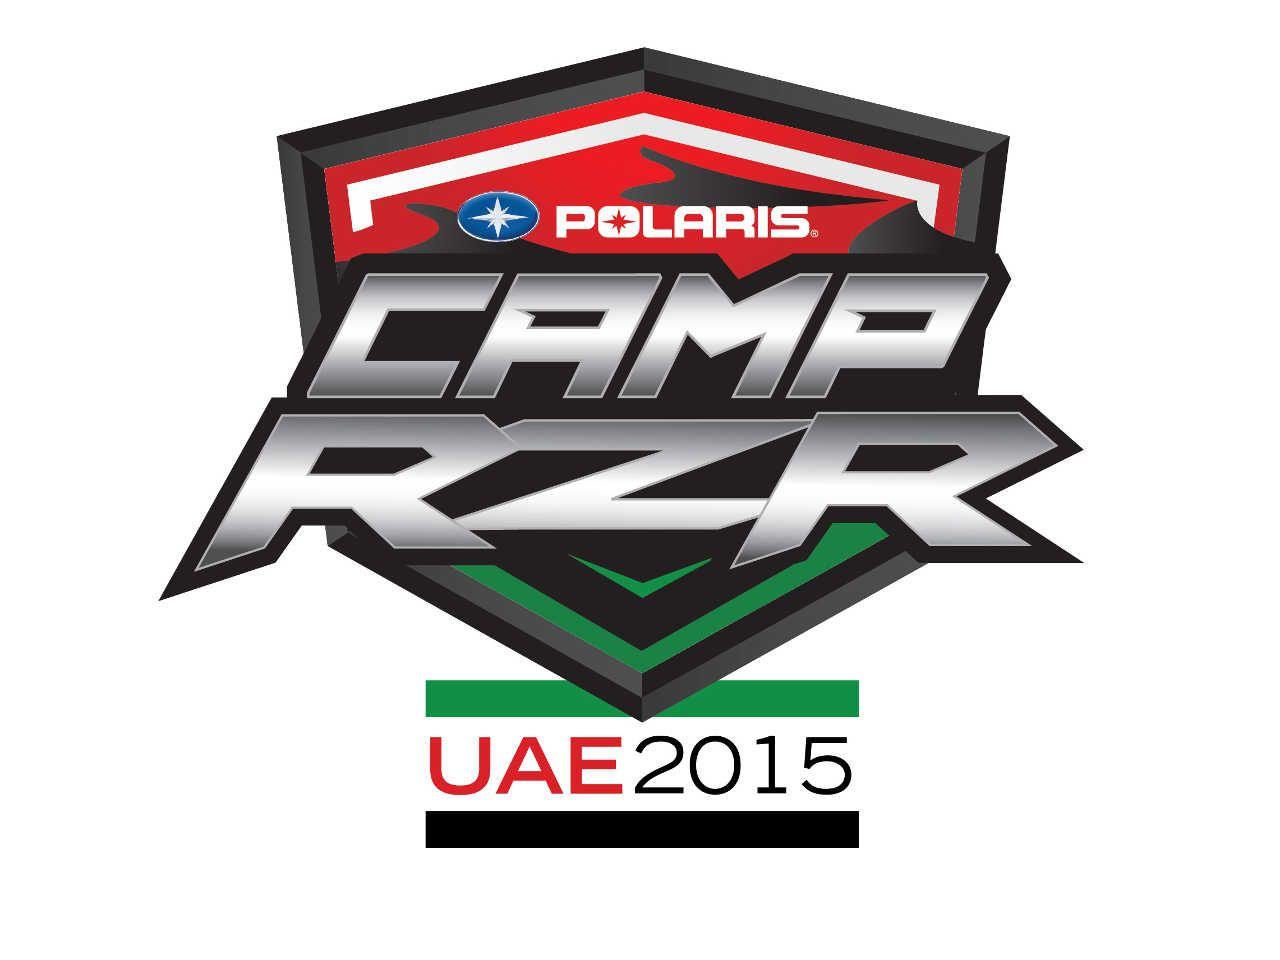 Polaris RZR Logo - Polaris Announces Second Camp RZR in the United Arab Emirates | ATV ...